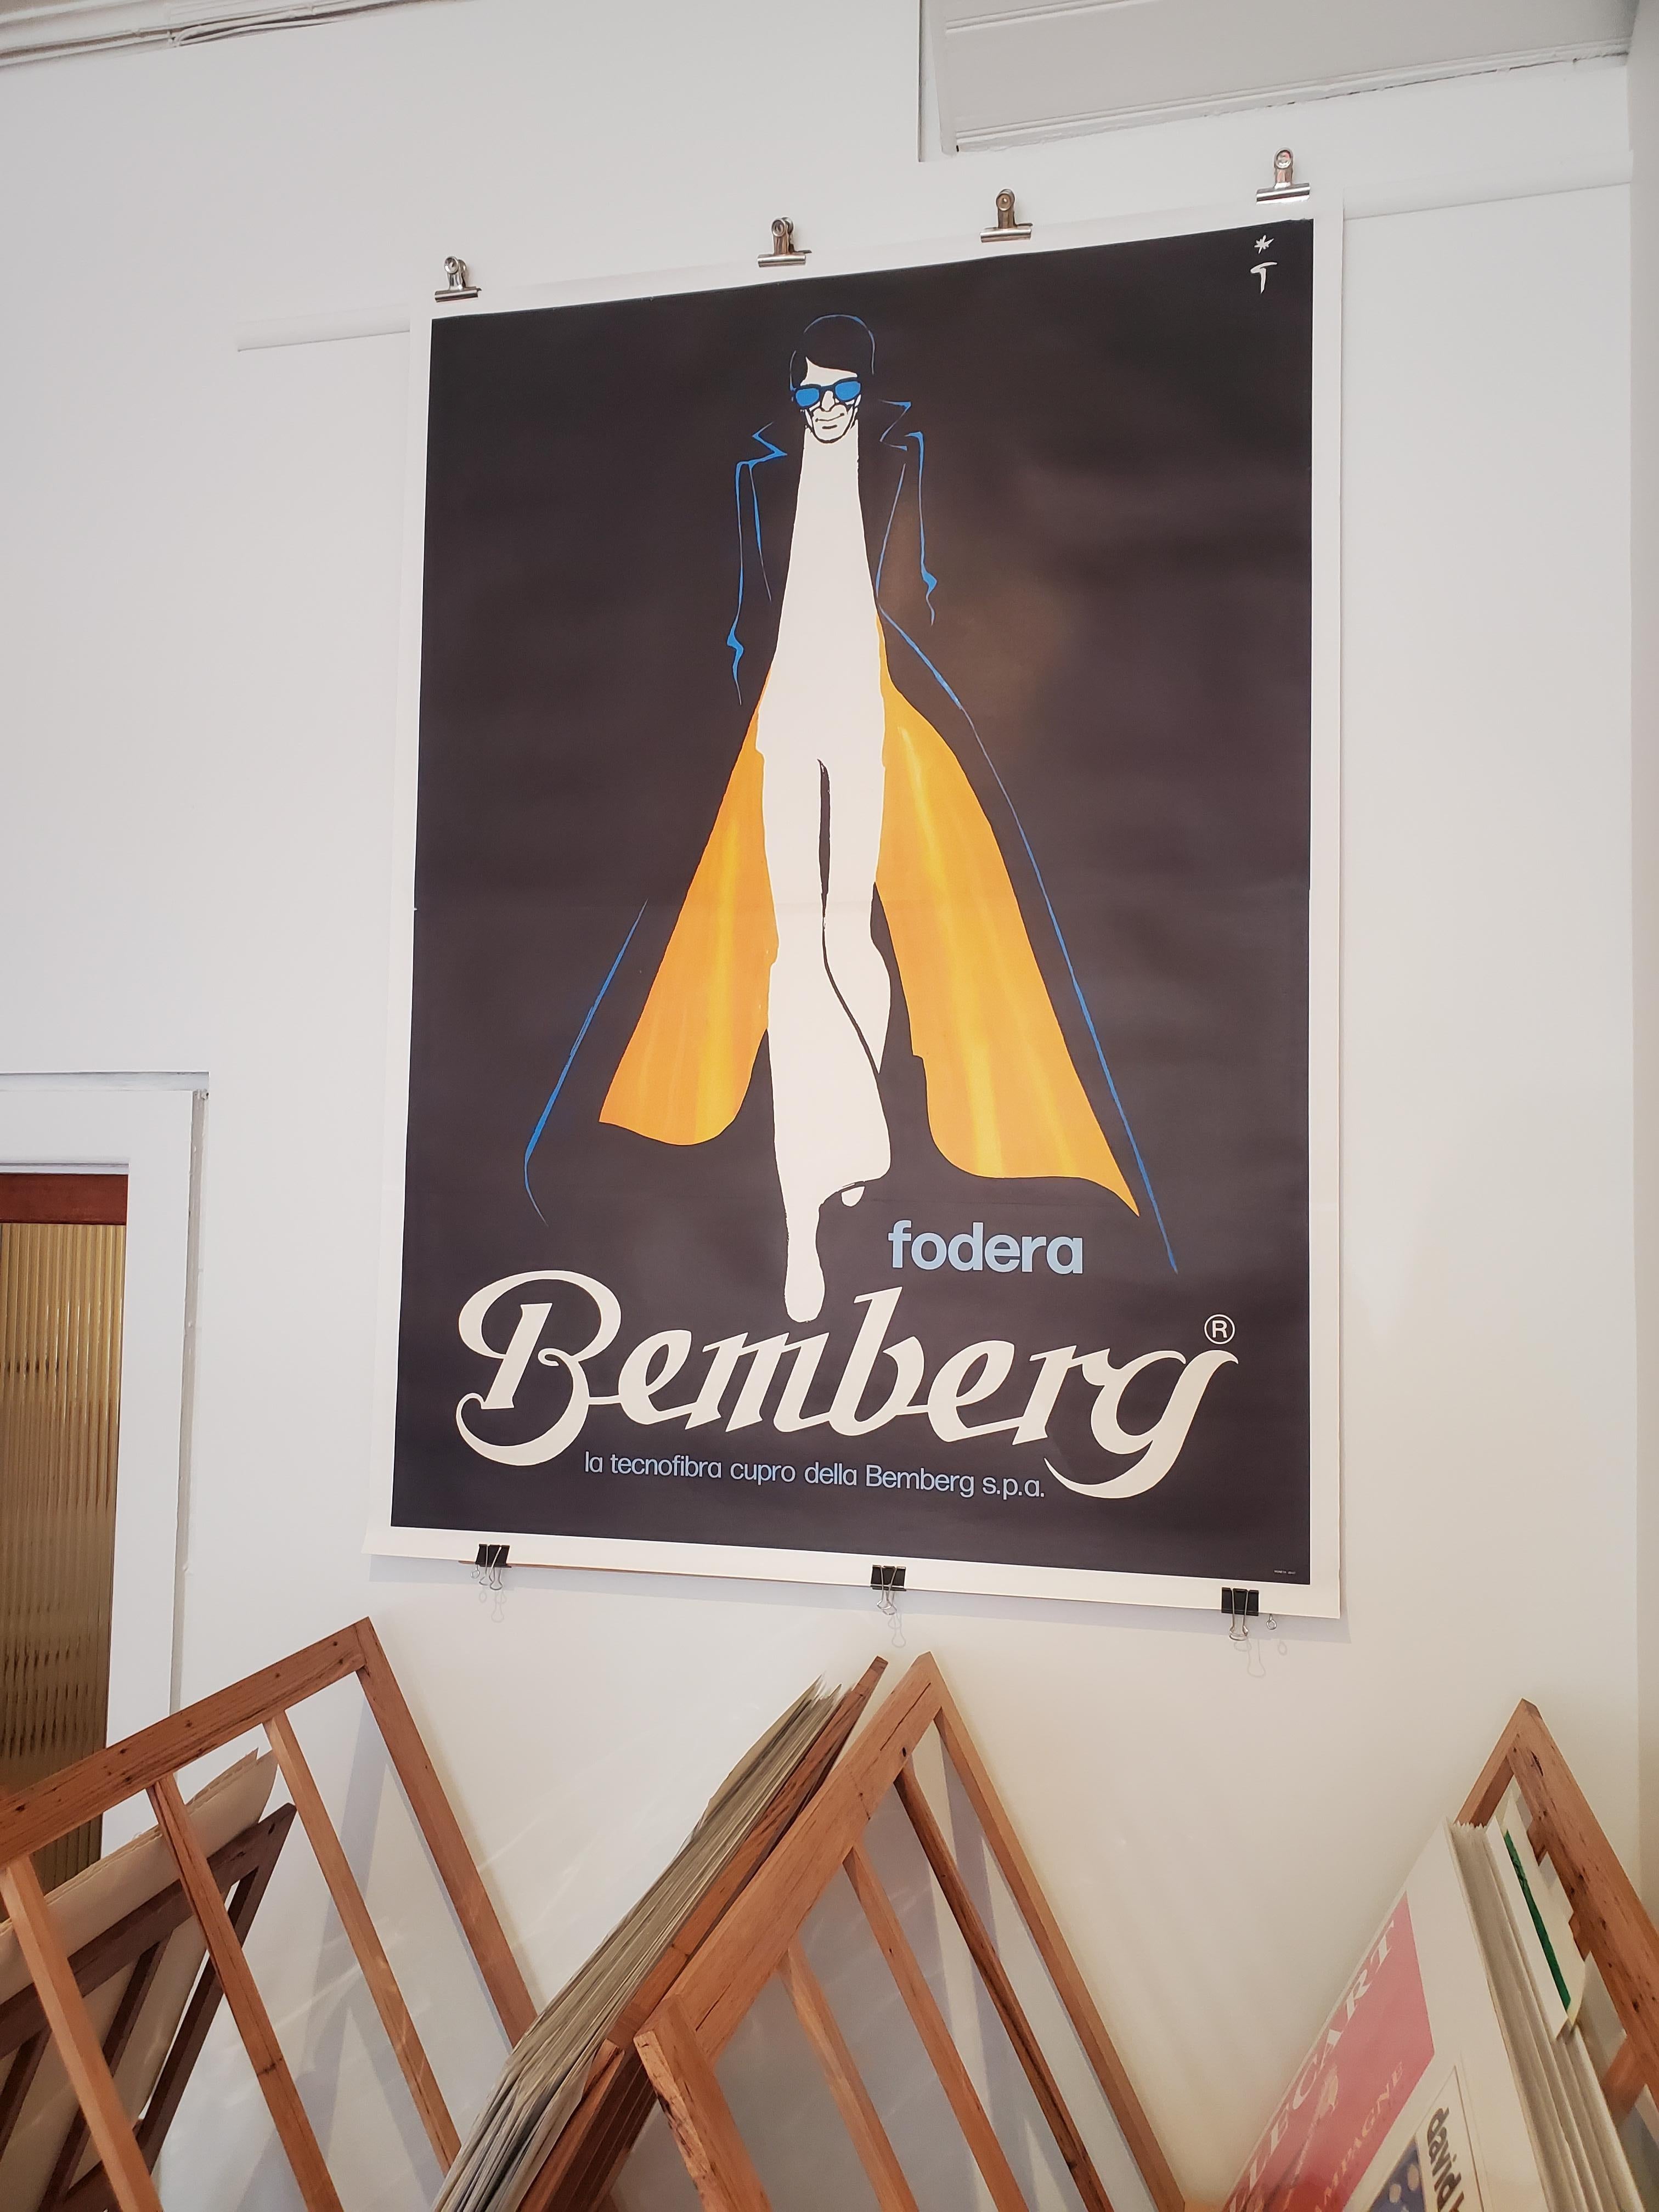 RARE affiche vintage originale, 'Bemberg' par l'illustrateur de mode italien, Rene Gruau - 1964

RARE affiche à deux panneaux de la première édition. René Gruau était un artiste italien connu pour son style pictural d'illustration de mode. Gruau